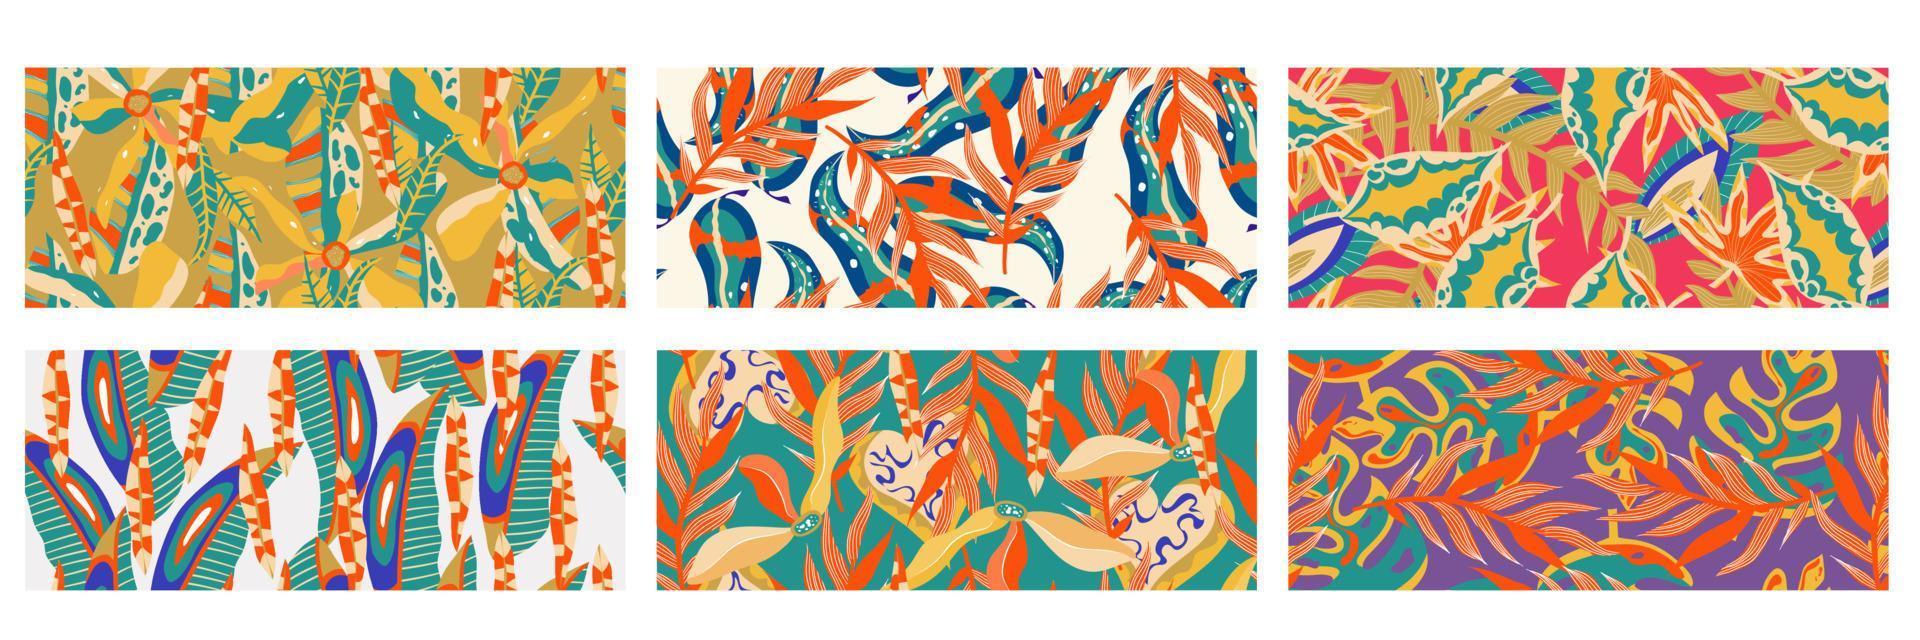 la pared de la jungla estética contemporánea establece un fondo de patrón horizontal sin costuras. patrón de selva floral exótico moderno. vector de fondo de textura de arte de patrón. arte de fondo floral de hoja boho étnico.